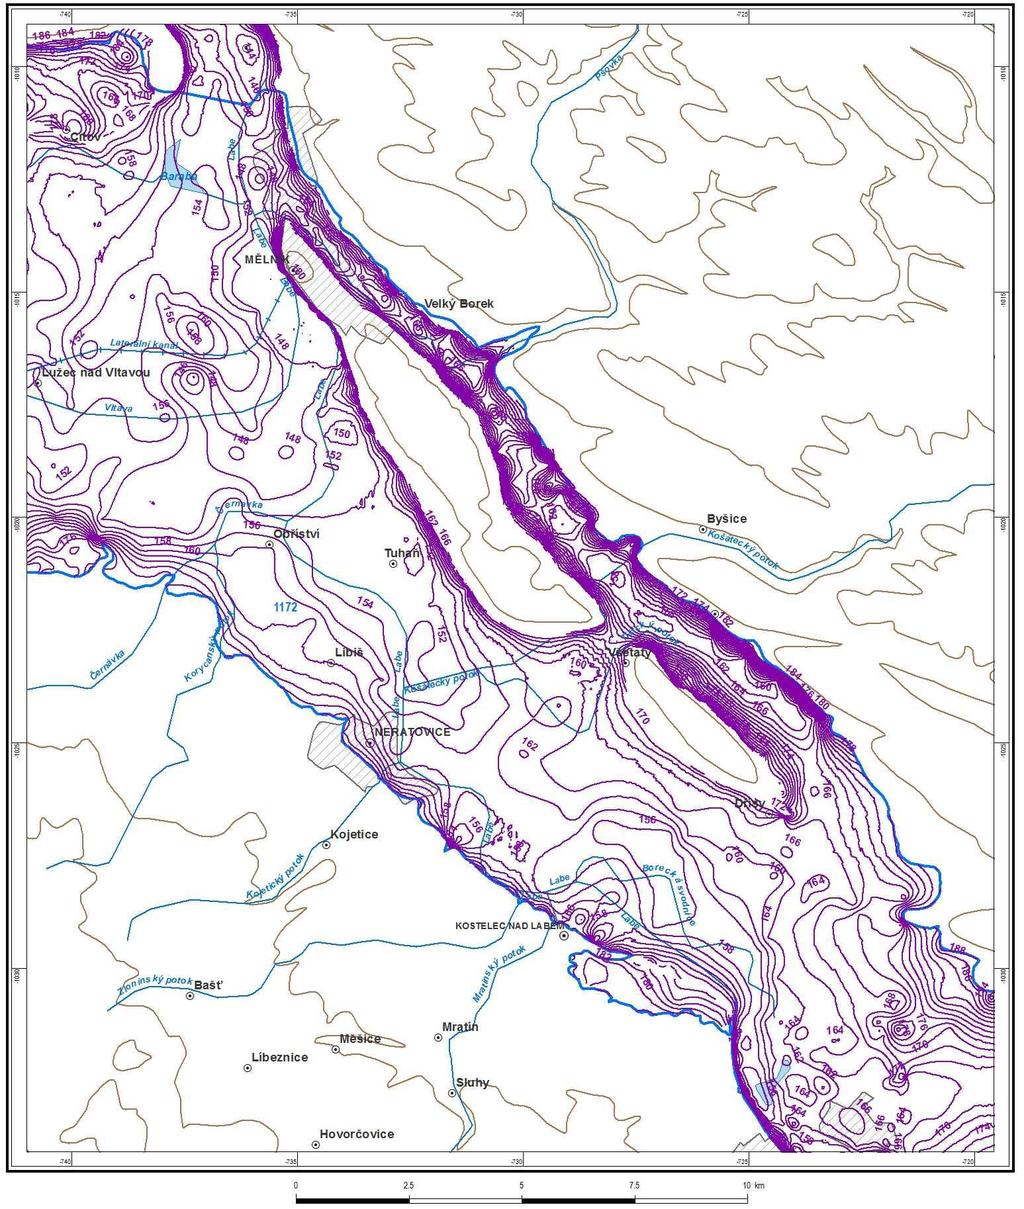 fluviálního kužele jsou zřetelná paleokoryta, ve kterých se mocnost štěrkopískových sedimentů ppohybuje až okolo 20 m.